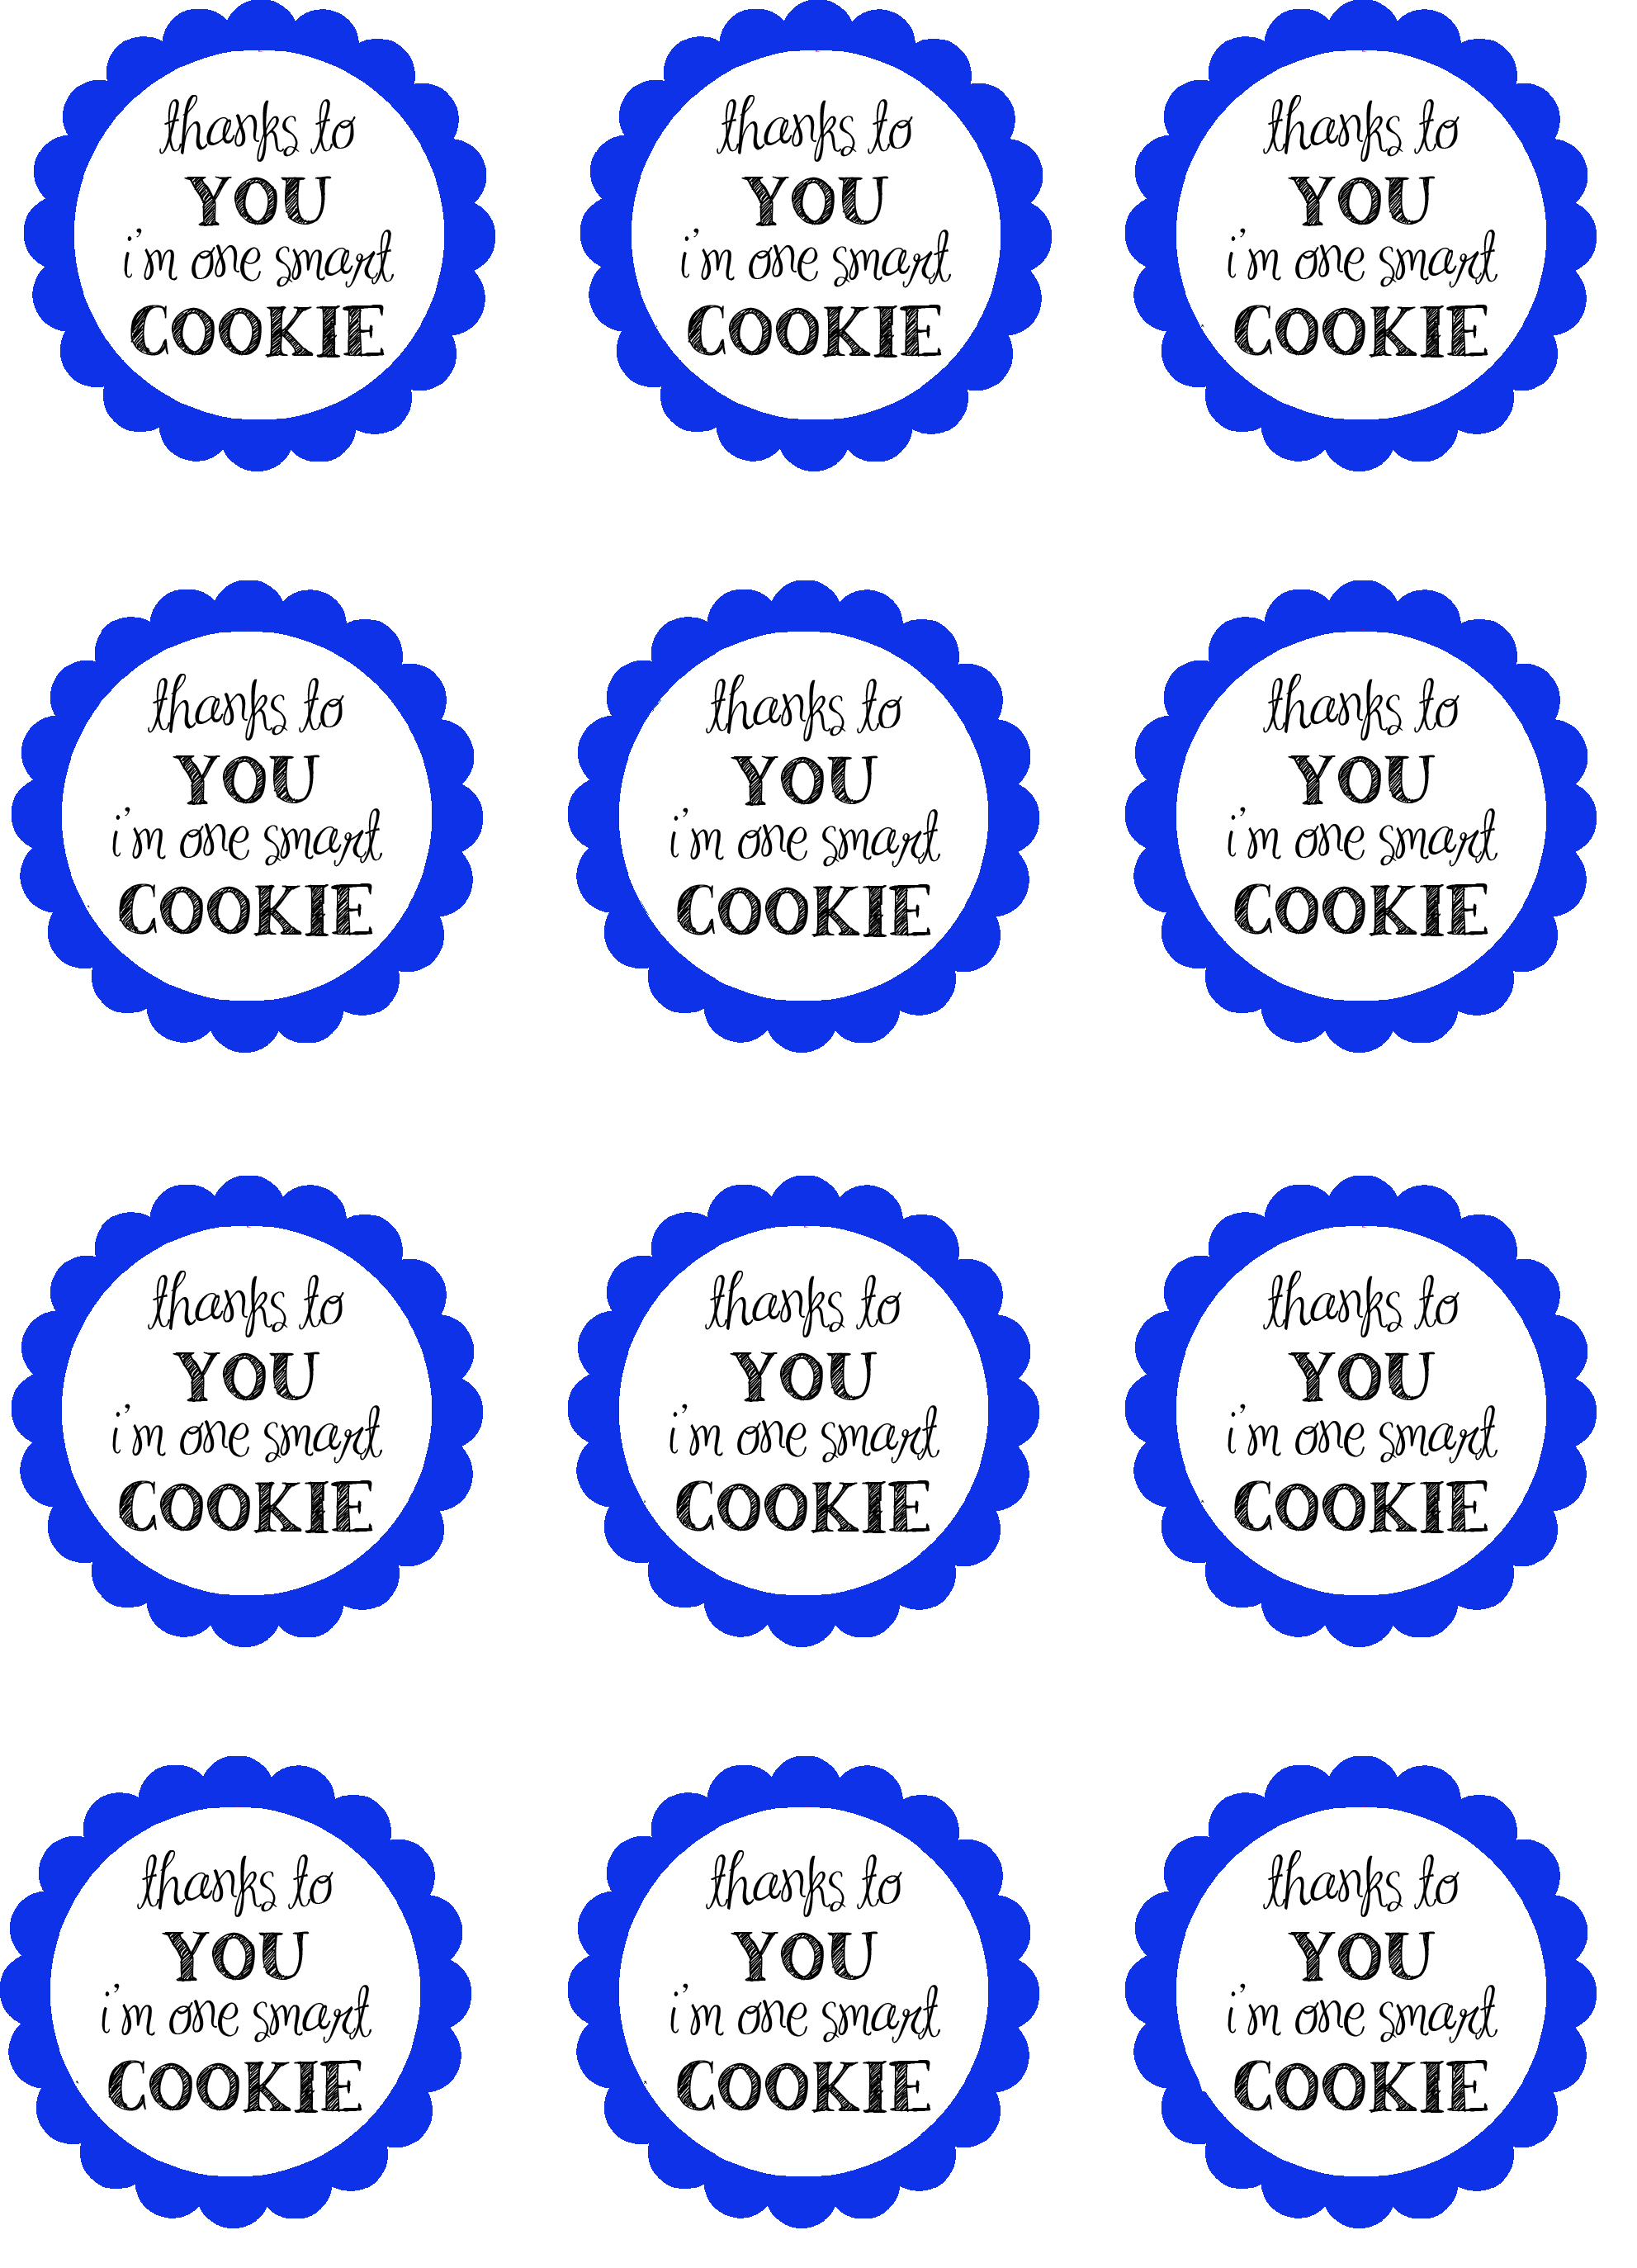 5-best-images-of-cookie-jar-template-printable-cookie-jar-coloring